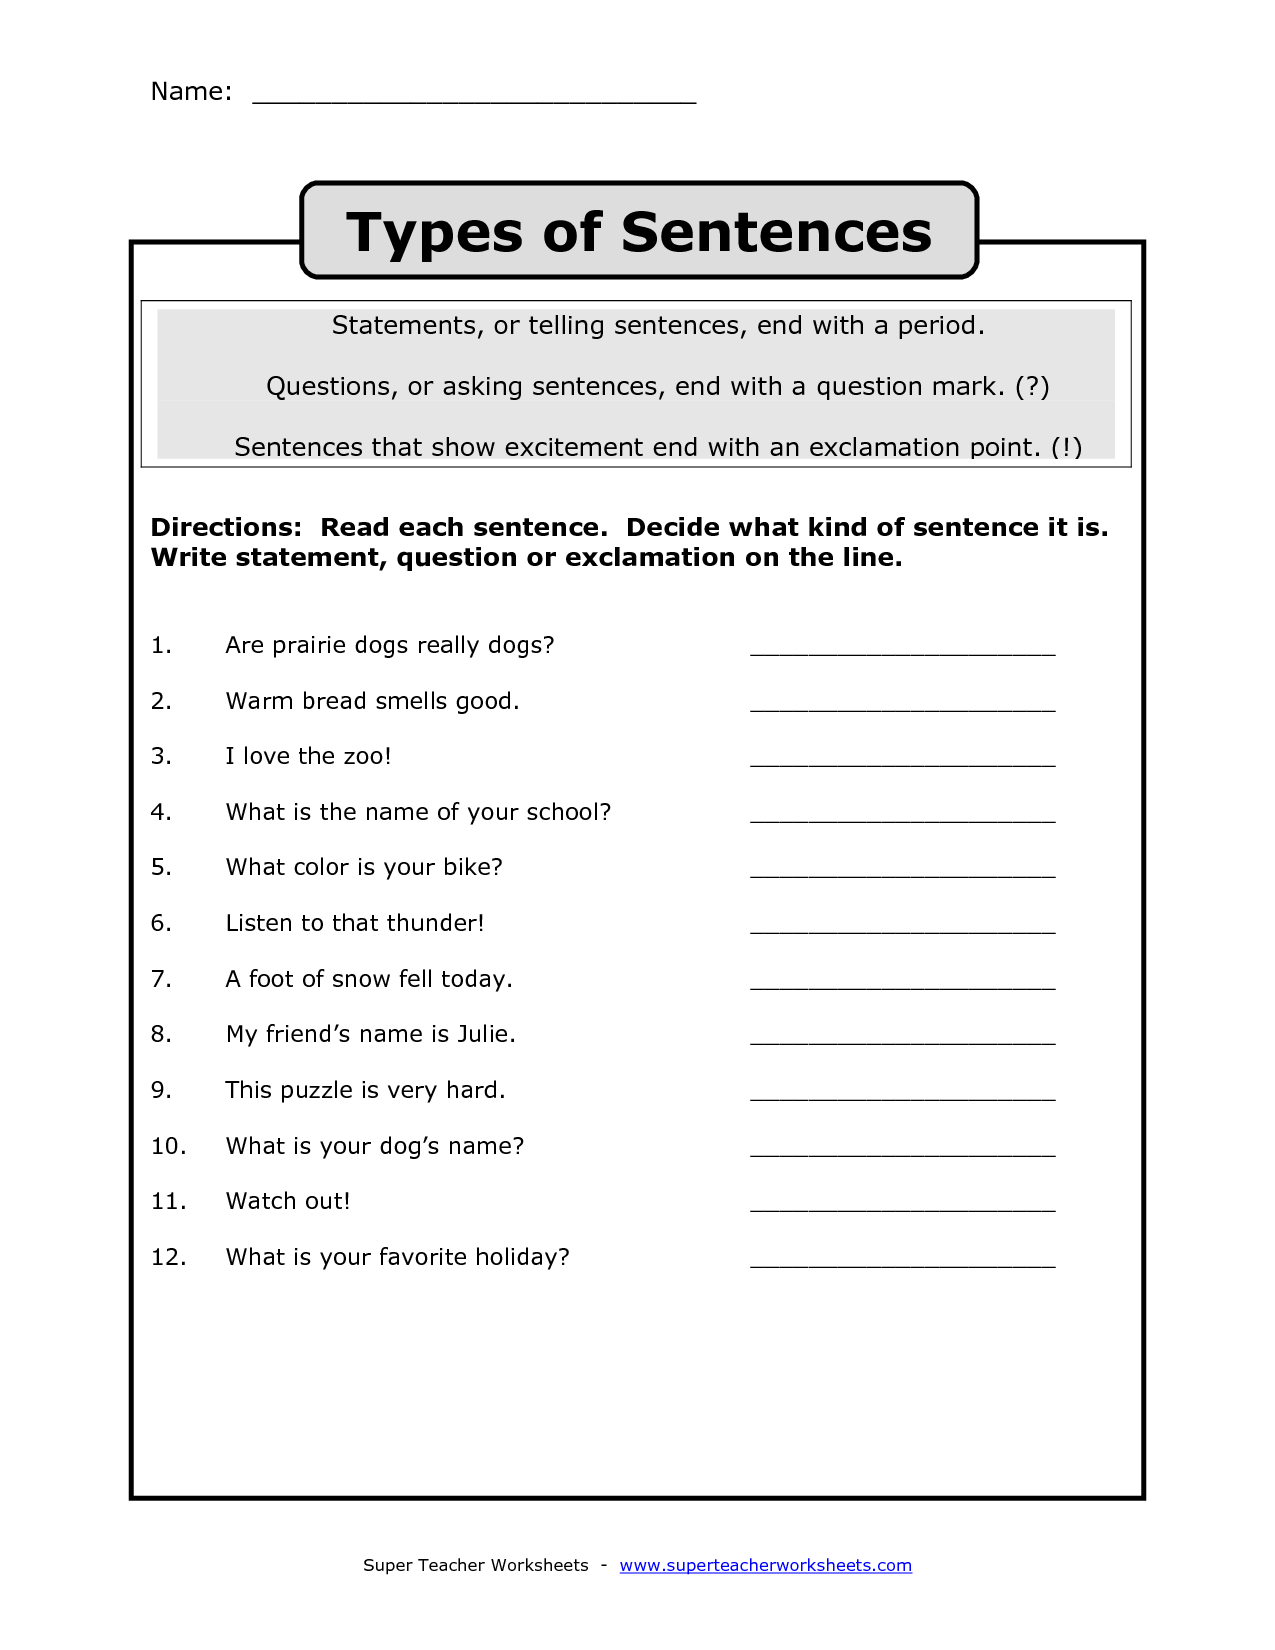 sentences-worksheets-types-of-sentences-worksheets